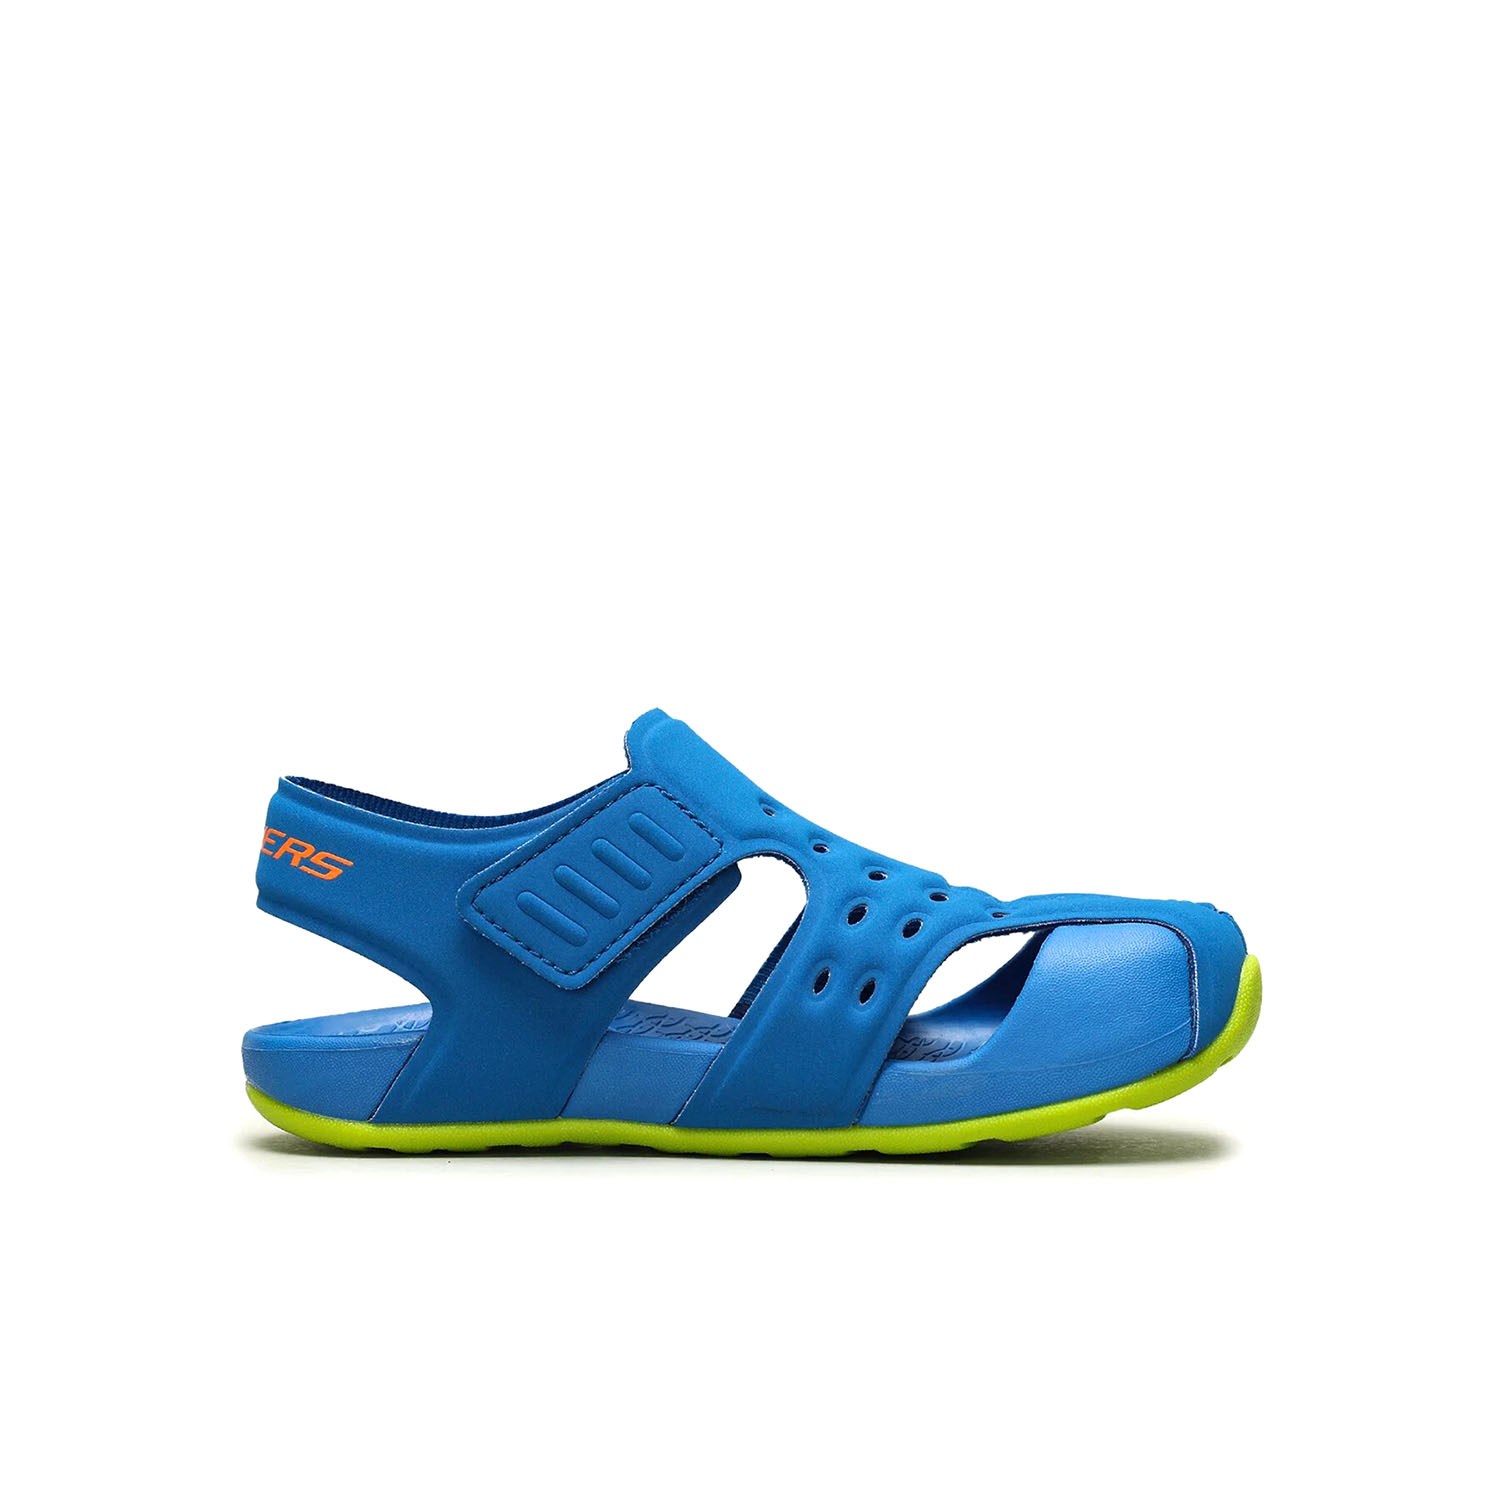 Skechers Side Wave Çocuk Sandalet Ayakkabı Mavi